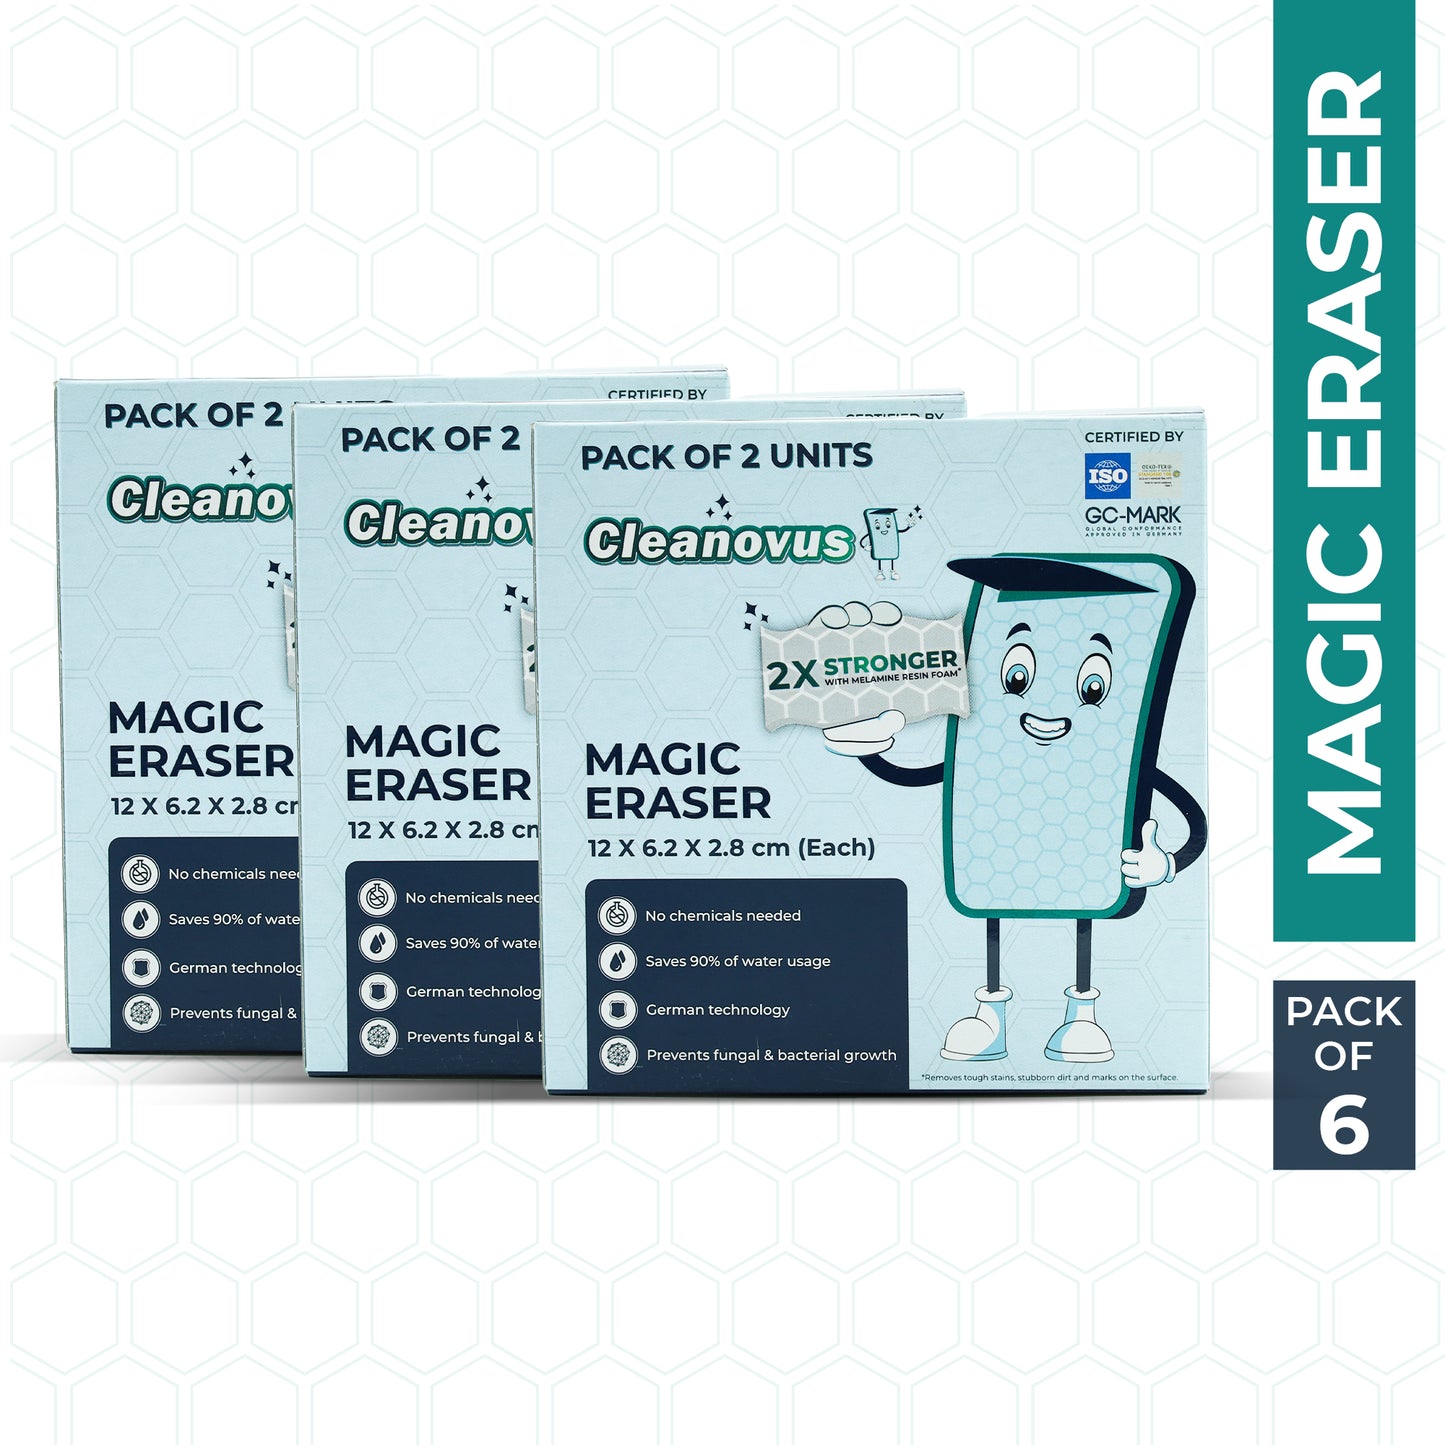 Magic Eraser - Pack of 2